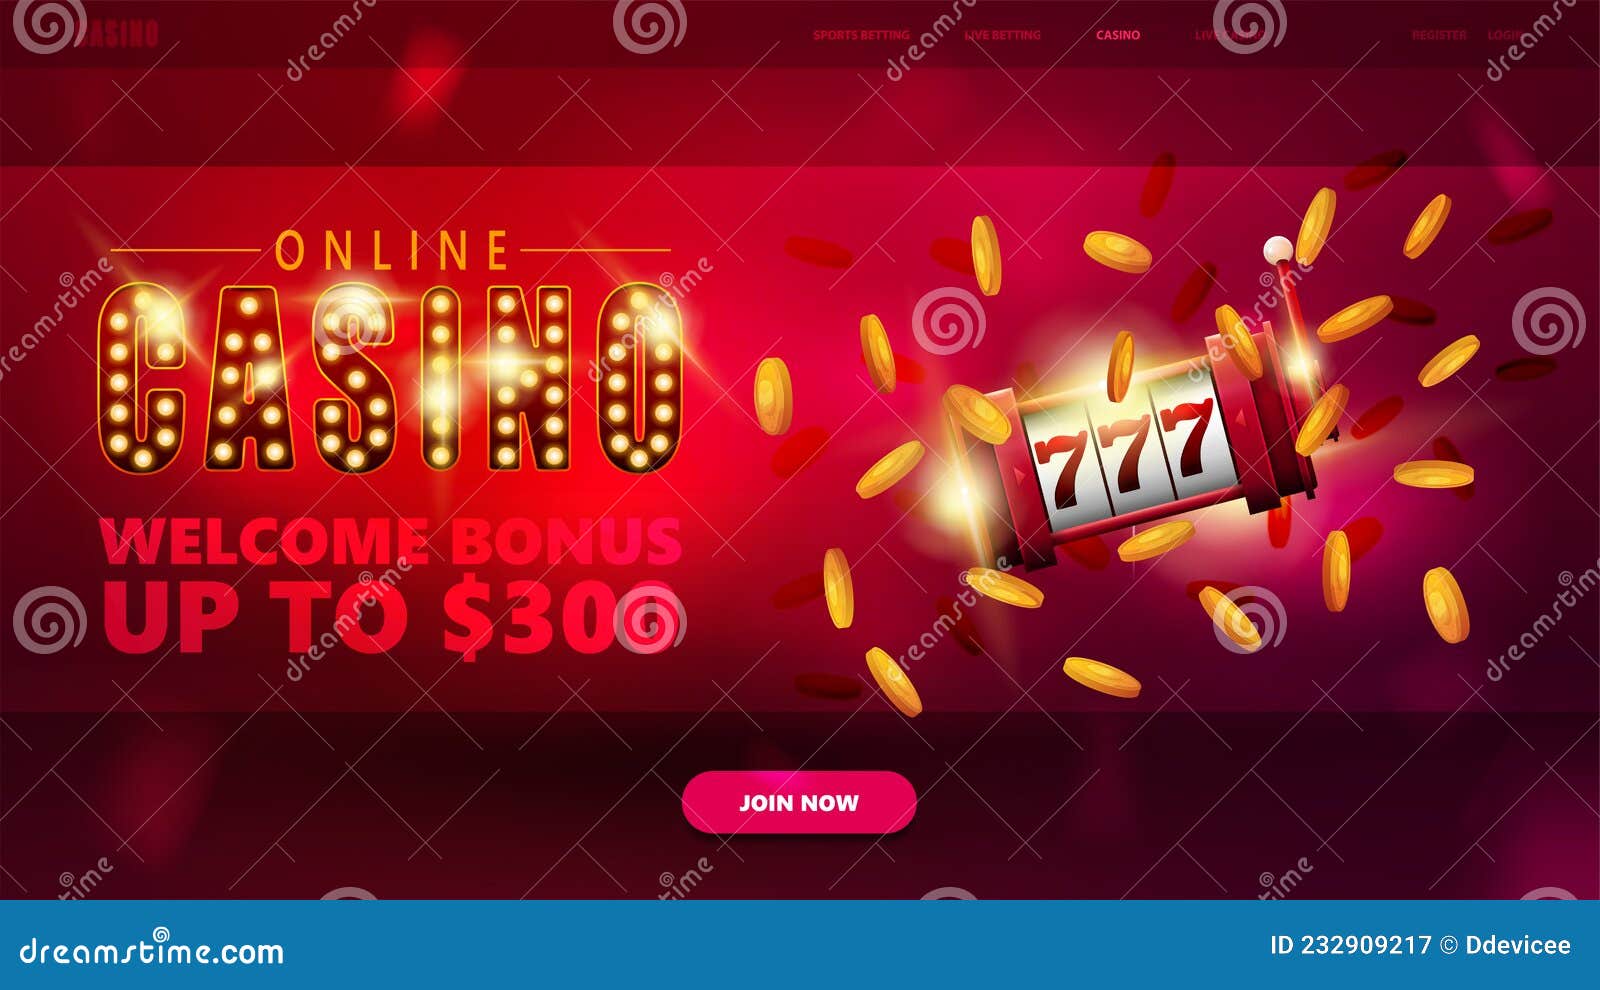 Wenden Sie eine dieser 10 geheimen Techniken an, um Online Casino Erfahrungen zu verbessern